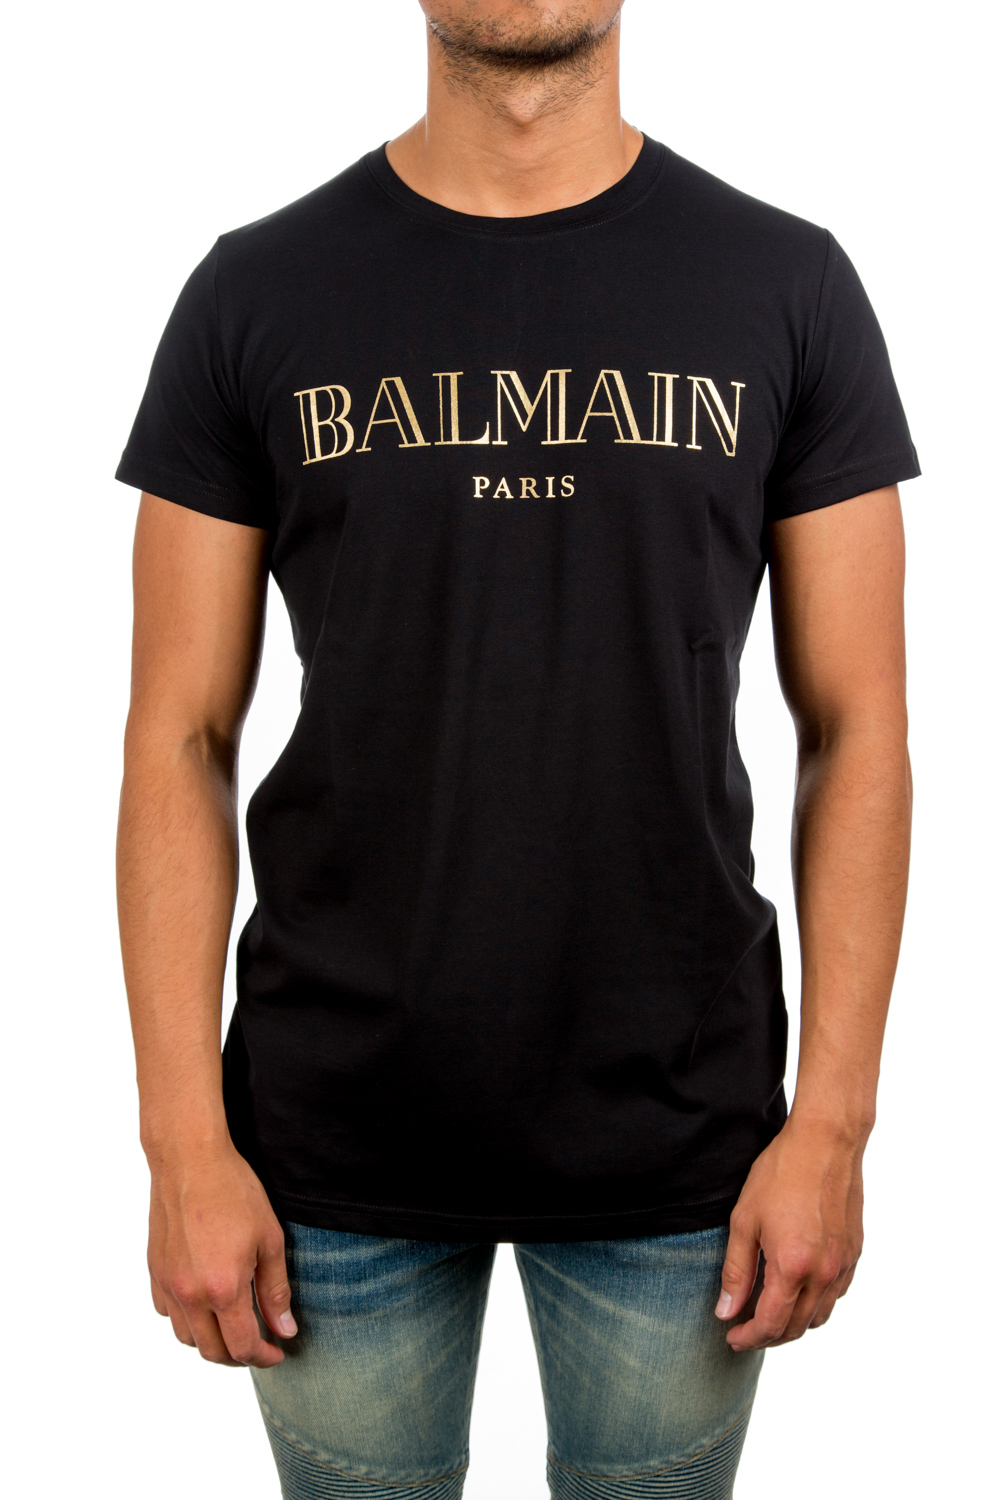 Balmain T-shirt Balmain | Credomen